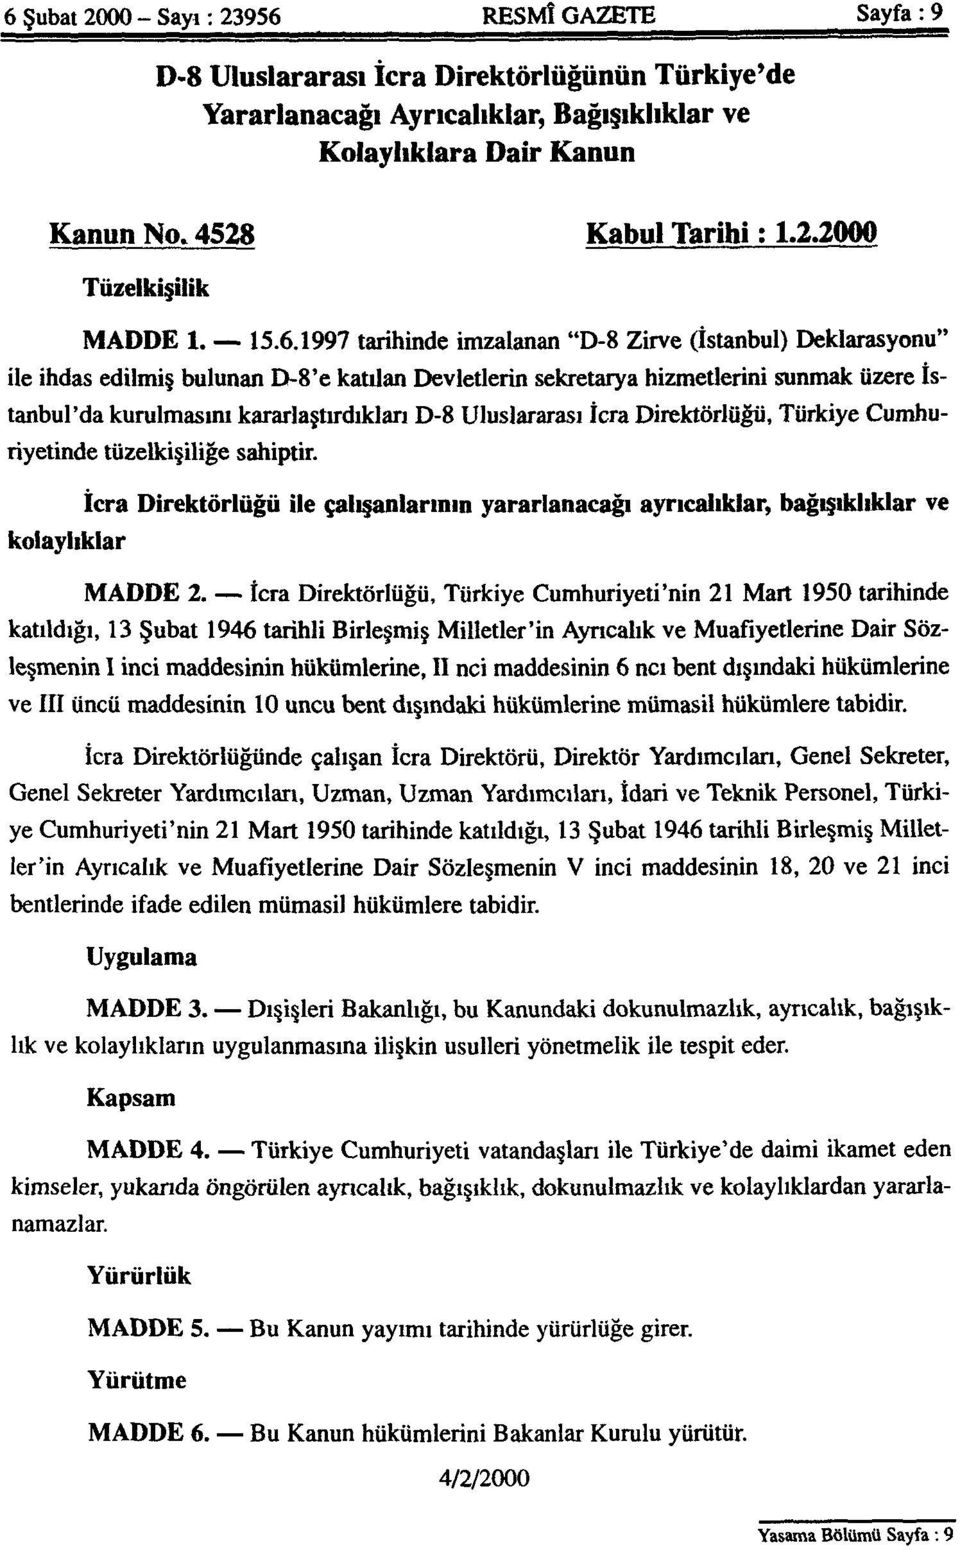 1997 tarihinde imzalanan "D-8 Zirve (İstanbul) Deklarasyonu" ile ihdas edilmiş bulunan D-8'e katılan Devletlerin sekretarya hizmetlerini sunmak üzere İstanbul'da kurulmasını kararlaştırdıkları D-8